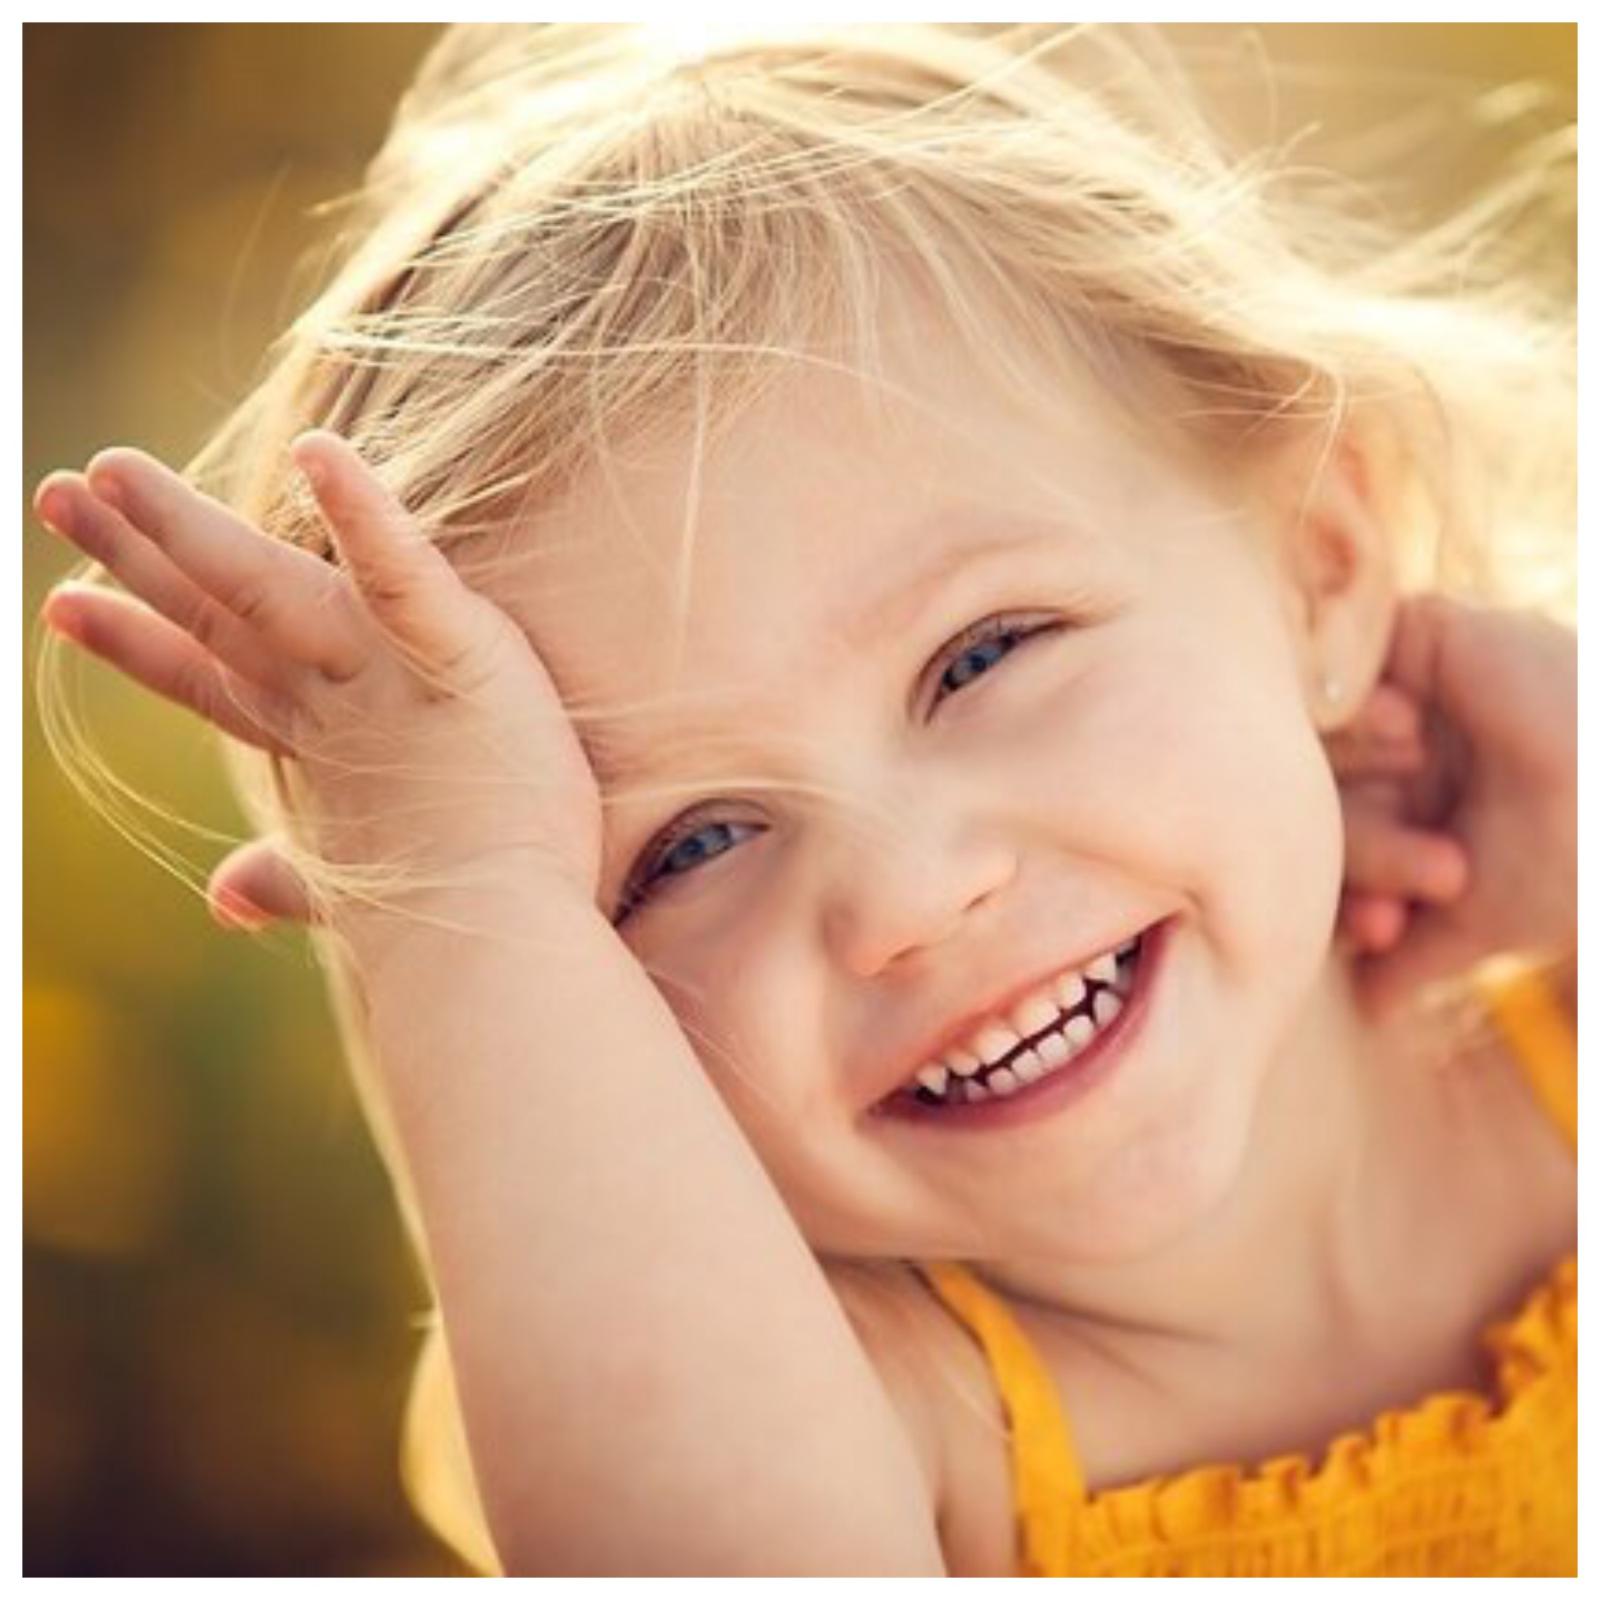 Смех — главный союзник в построении теплых отношений с ребенком 